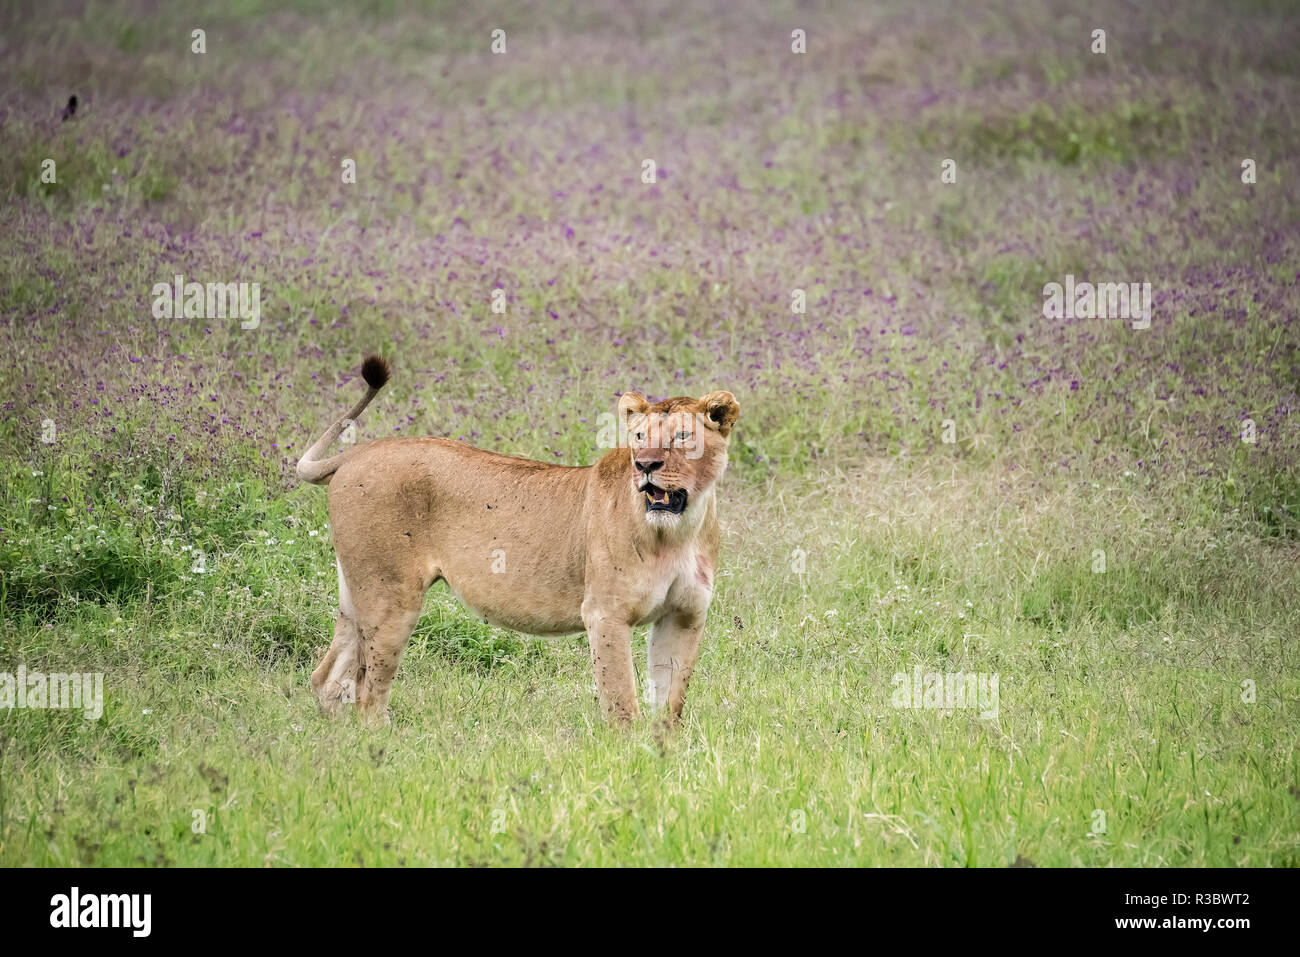 L'Afrique, Tanzanie. Lionne dans l'herbe fleurie. En tant que crédit : Jones & Shimlock / Jaynes Gallery / DanitaDelimont.com Banque D'Images